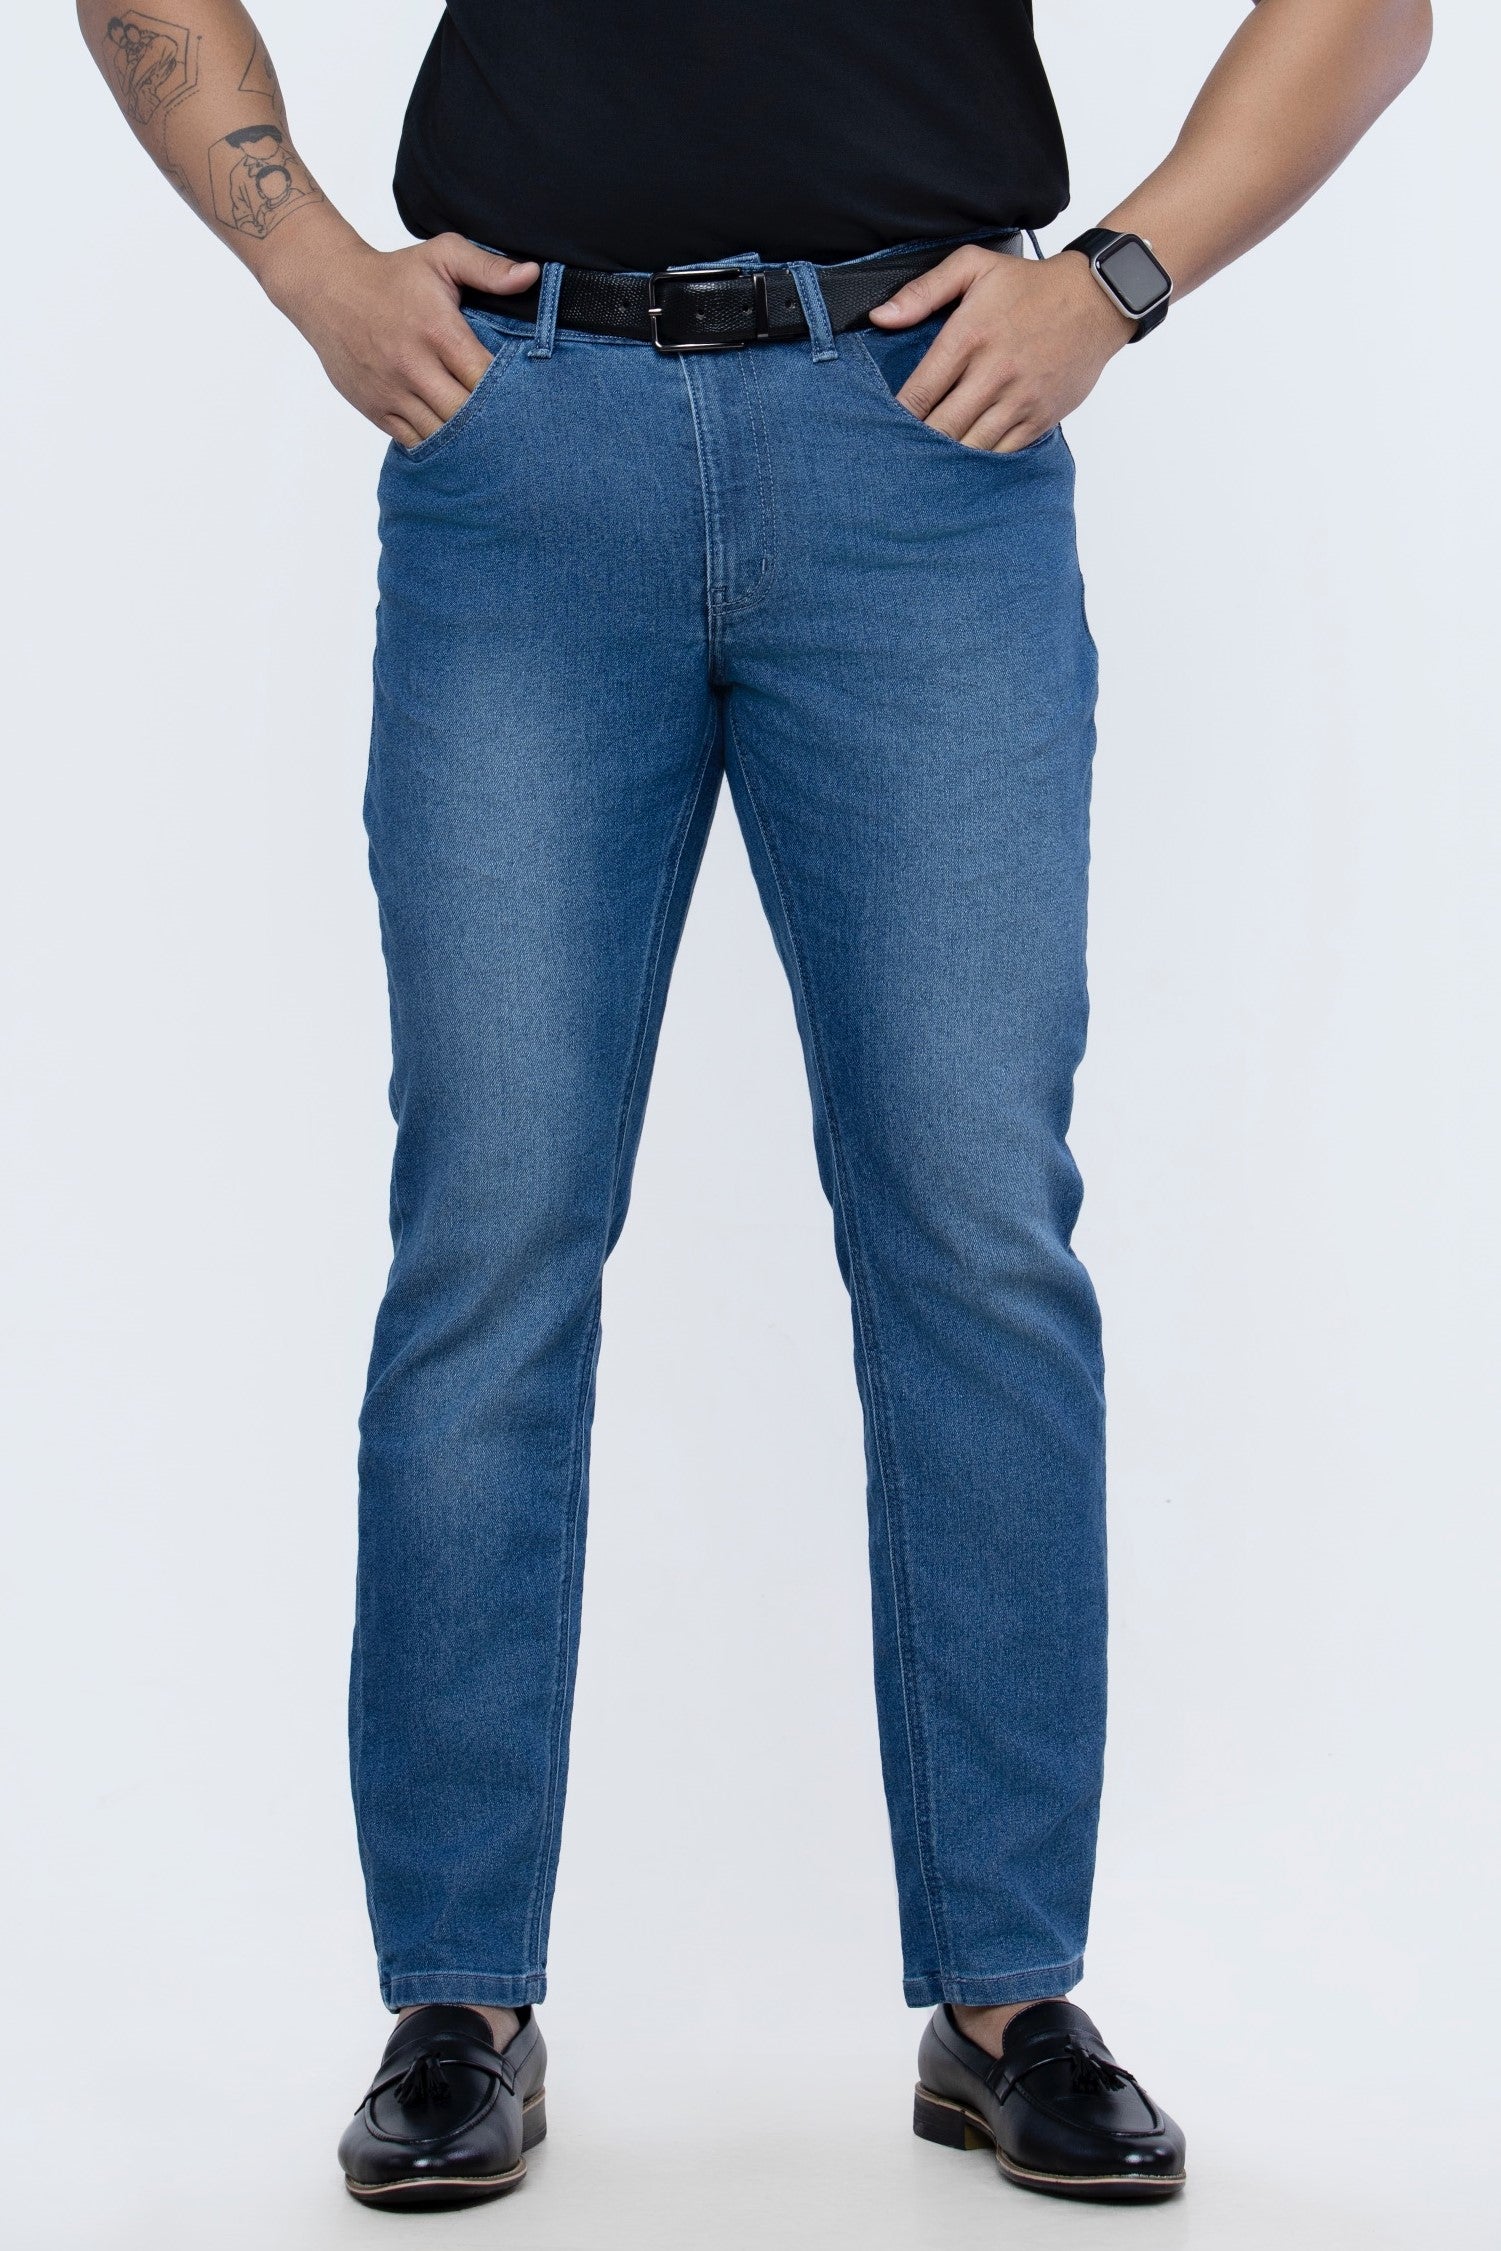 Men's Slim Fit Jeans - Mid